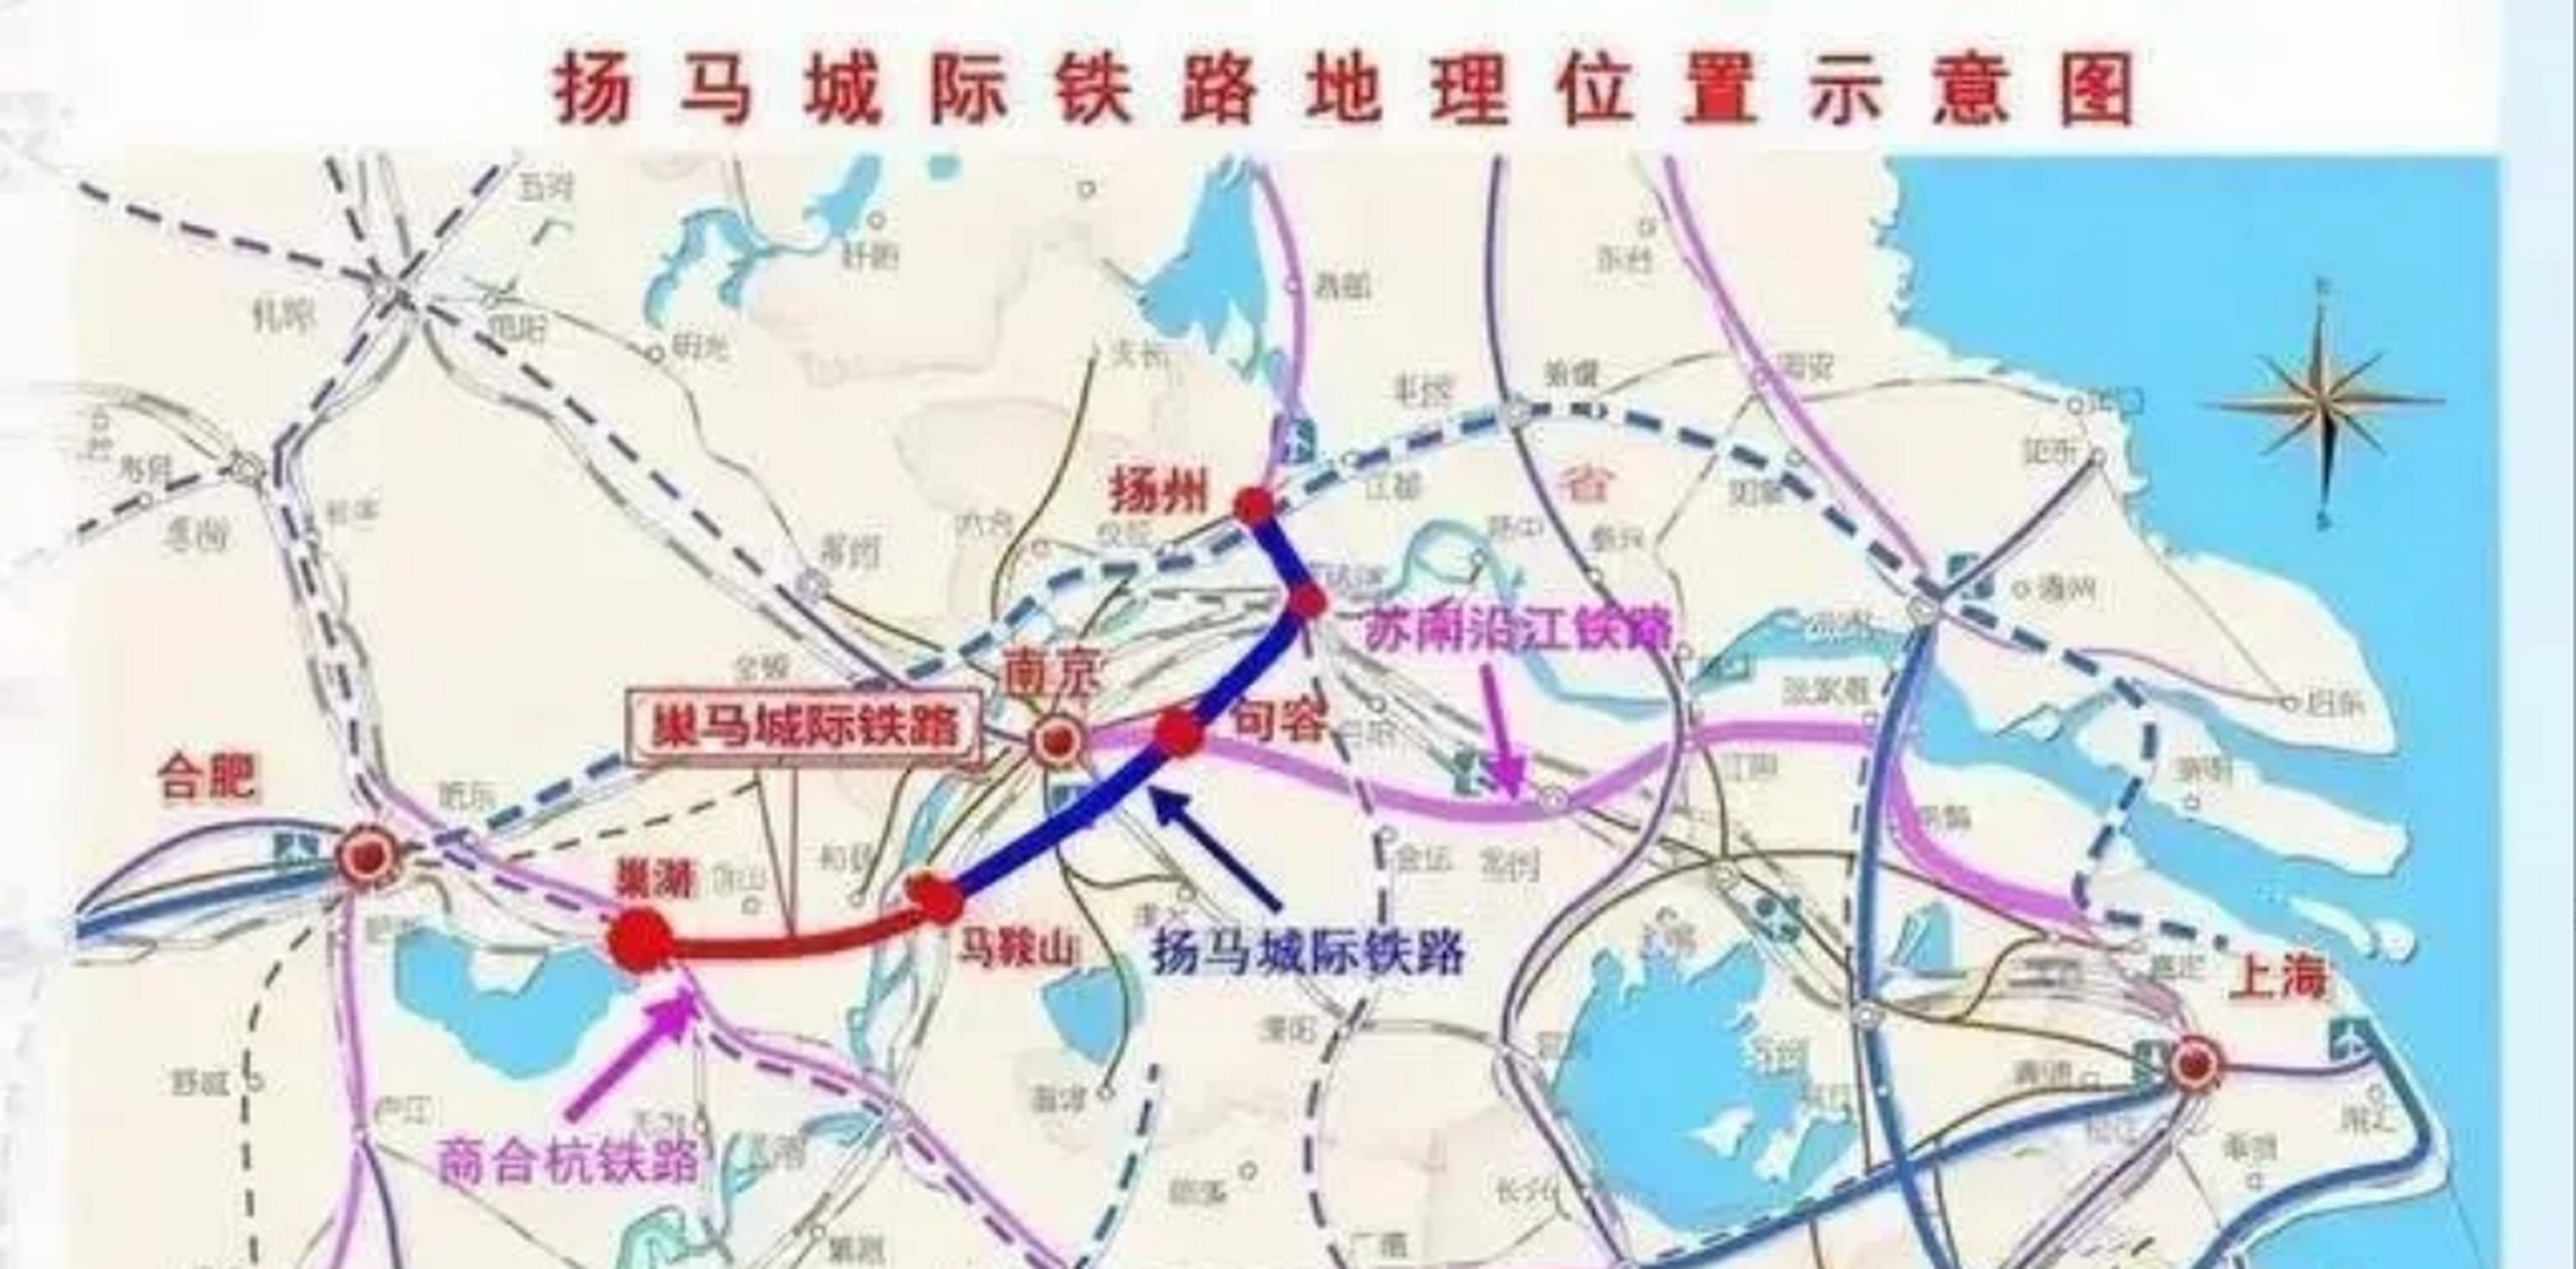 句容未来应该是南京周边卫星城中高铁交通最便利的